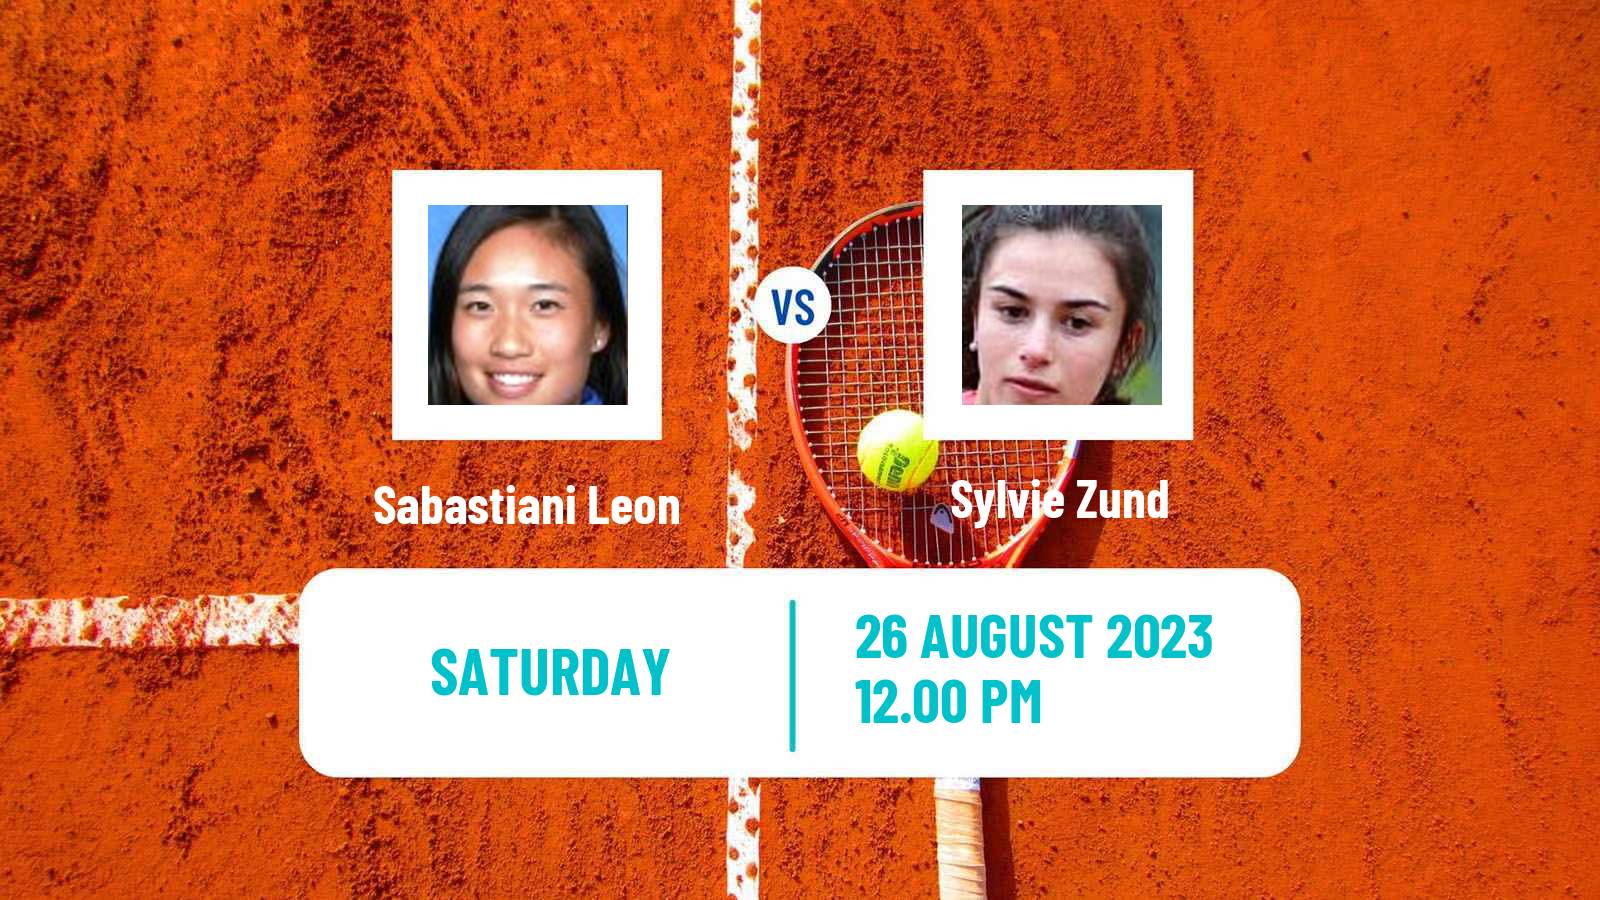 Tennis ITF W15 Lima Women Sabastiani Leon - Sylvie Zund